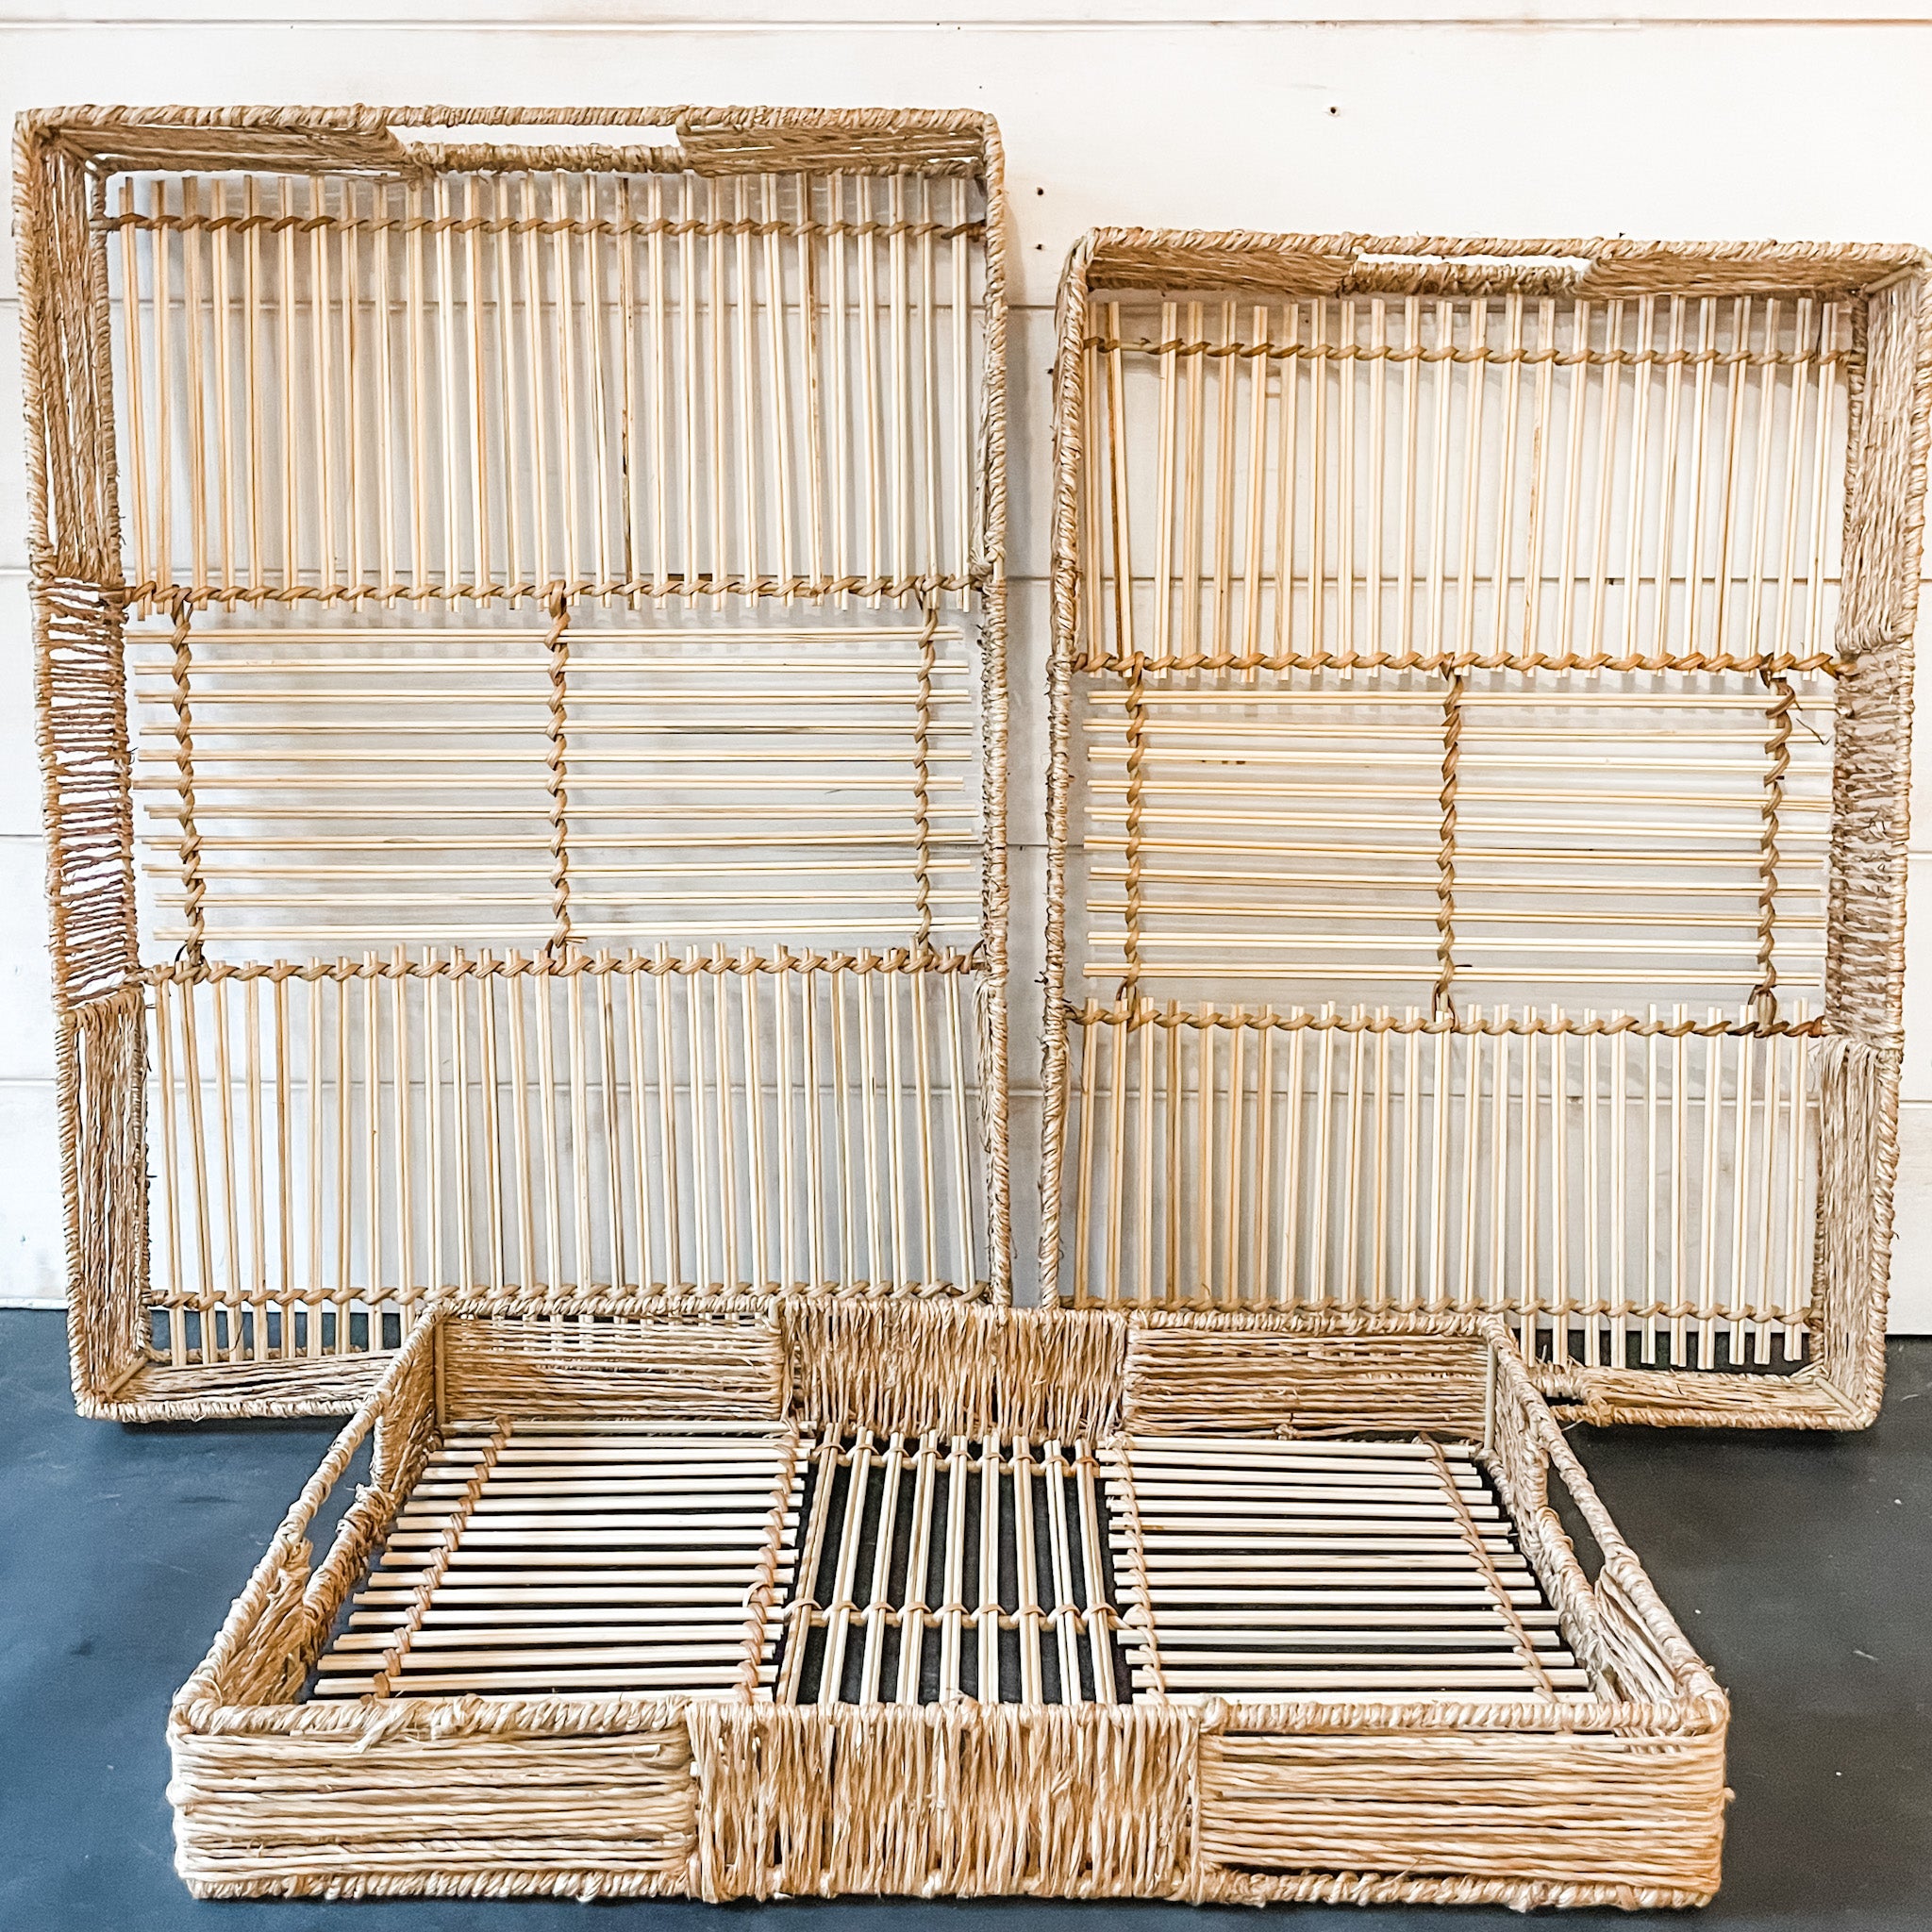 Hand-Woven Decorative Bamboo Tray